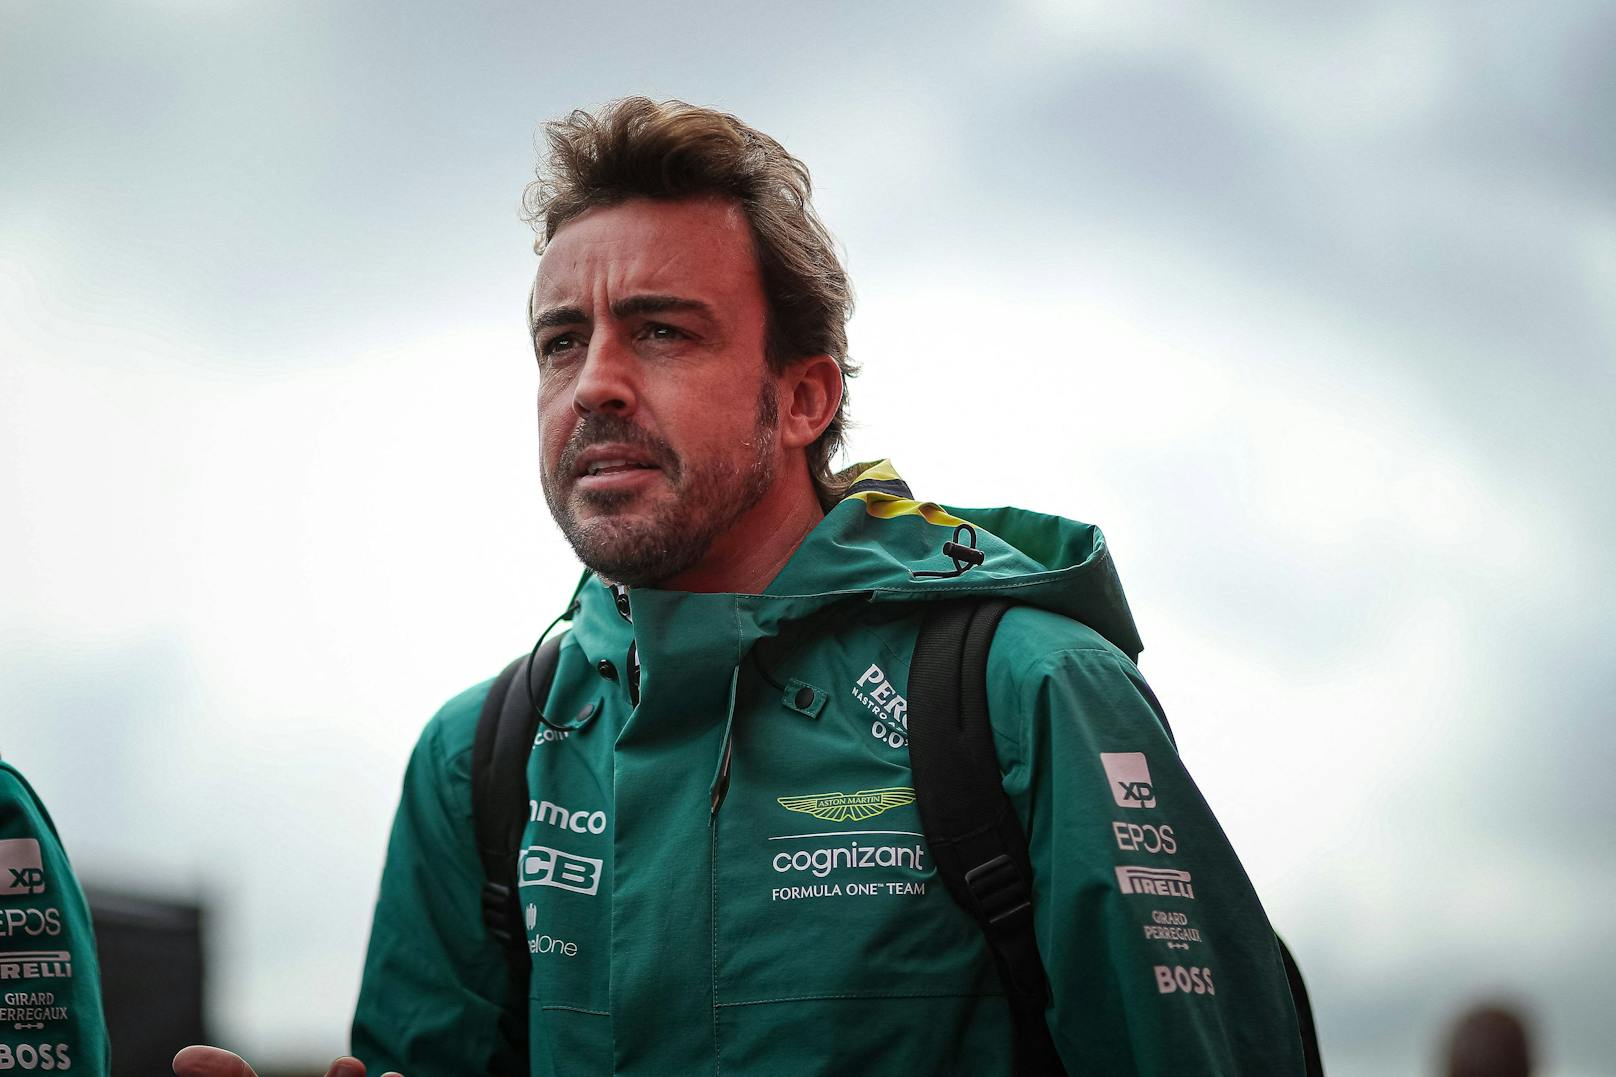 "Soll ruhig sein!" Alonso schießt gegen Ex-Boss